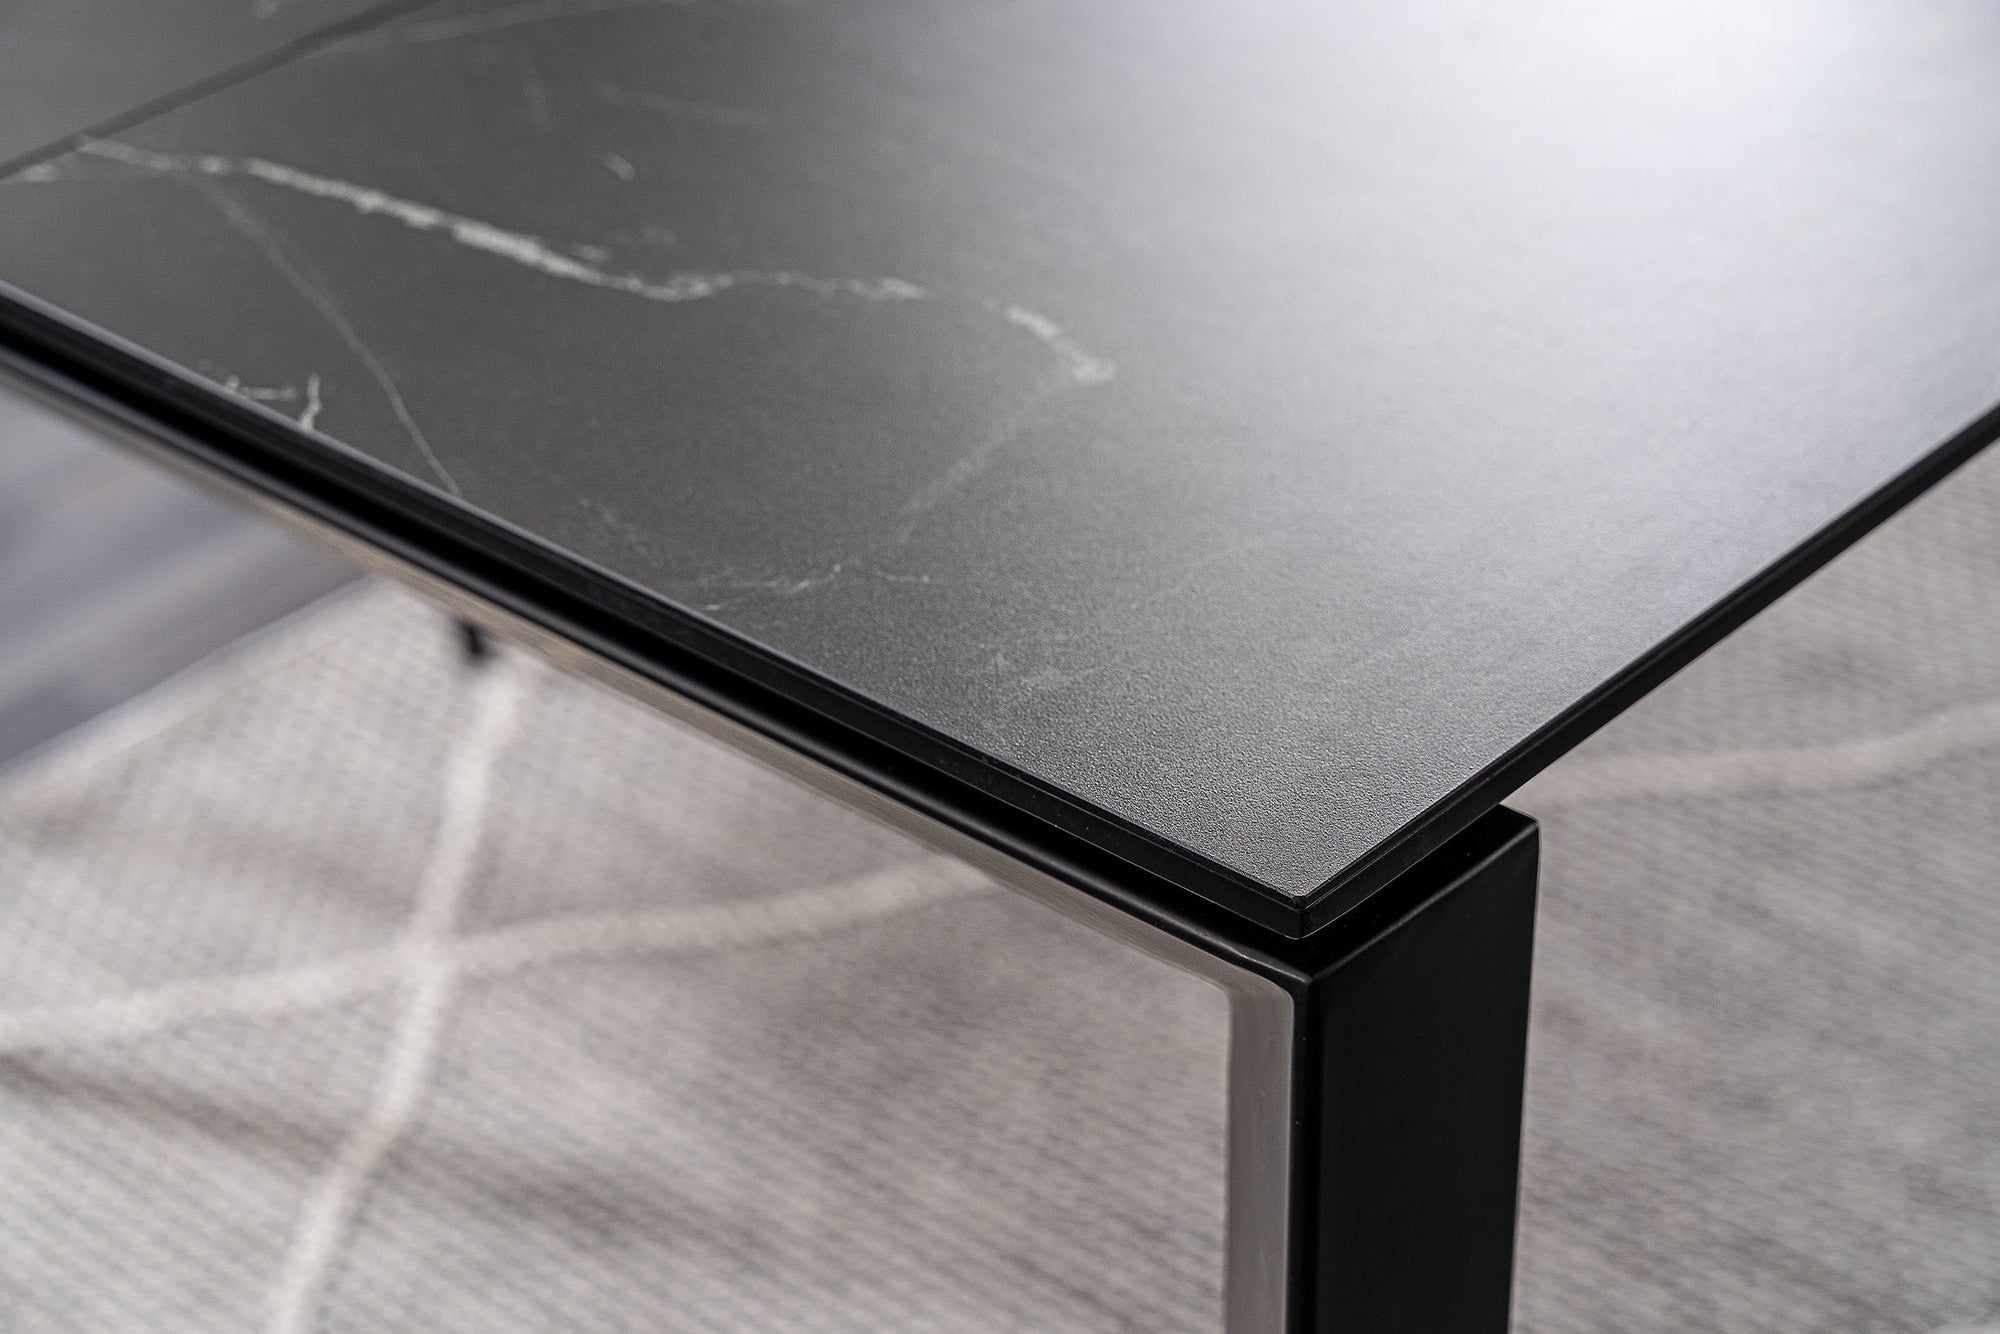 Foster asztal (fekete), 120-180 x 80 cm - Marco Mobili Bútoráruház - Étkezőasztal